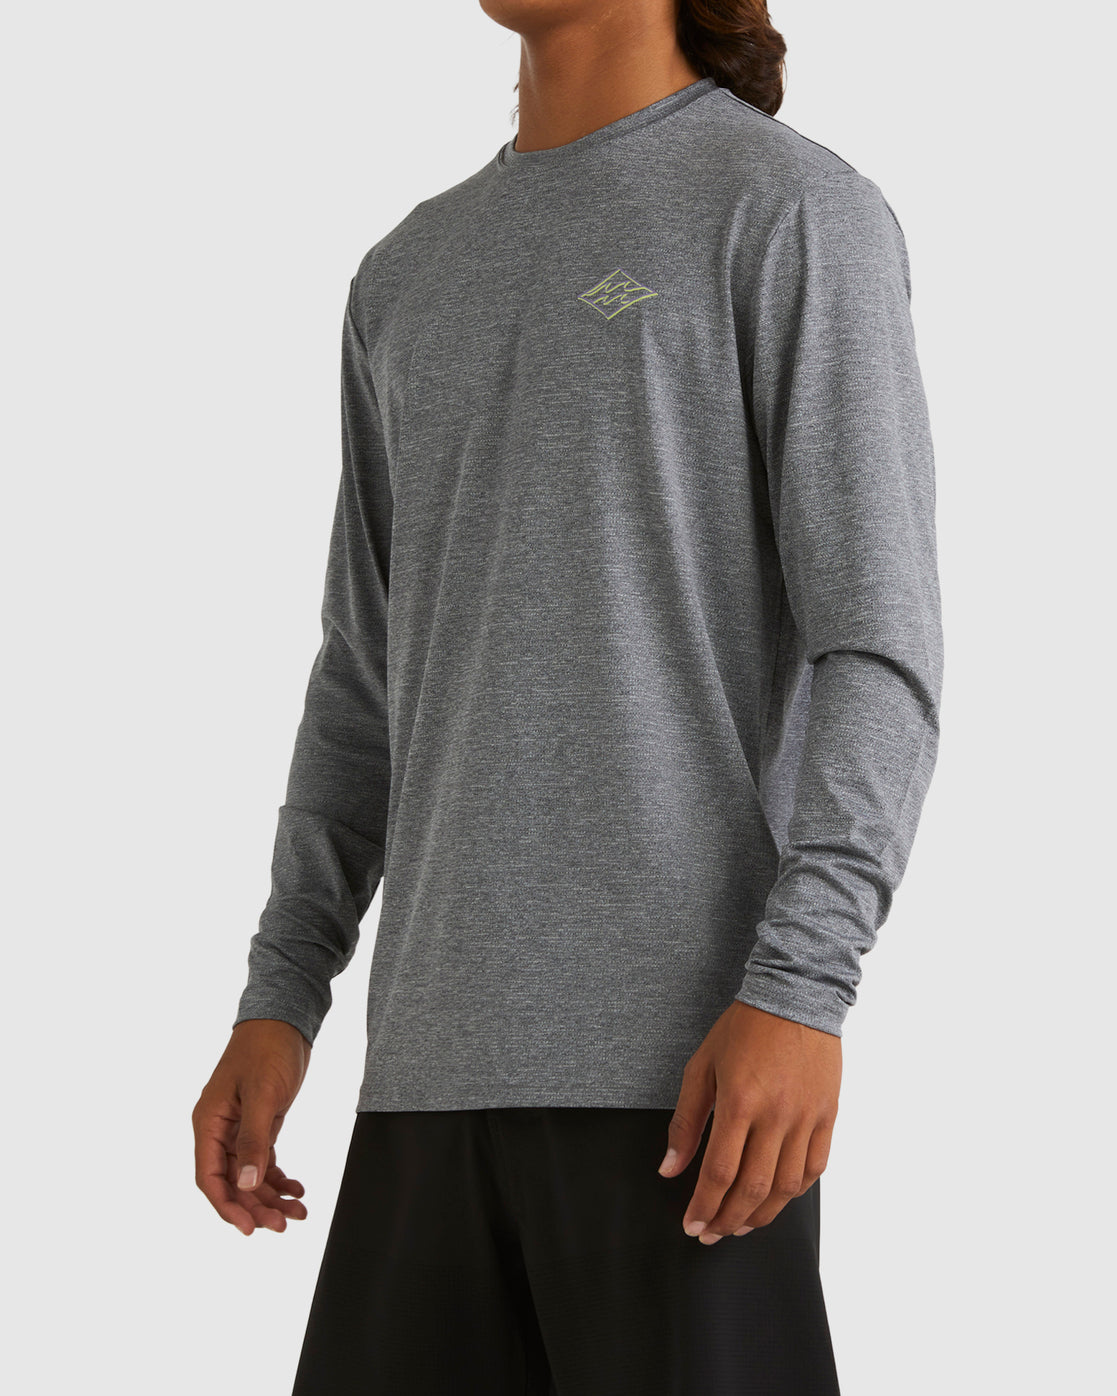 Diamond Shoreline - Long Sleeve UPF 50 Surf T-Shirt for Men